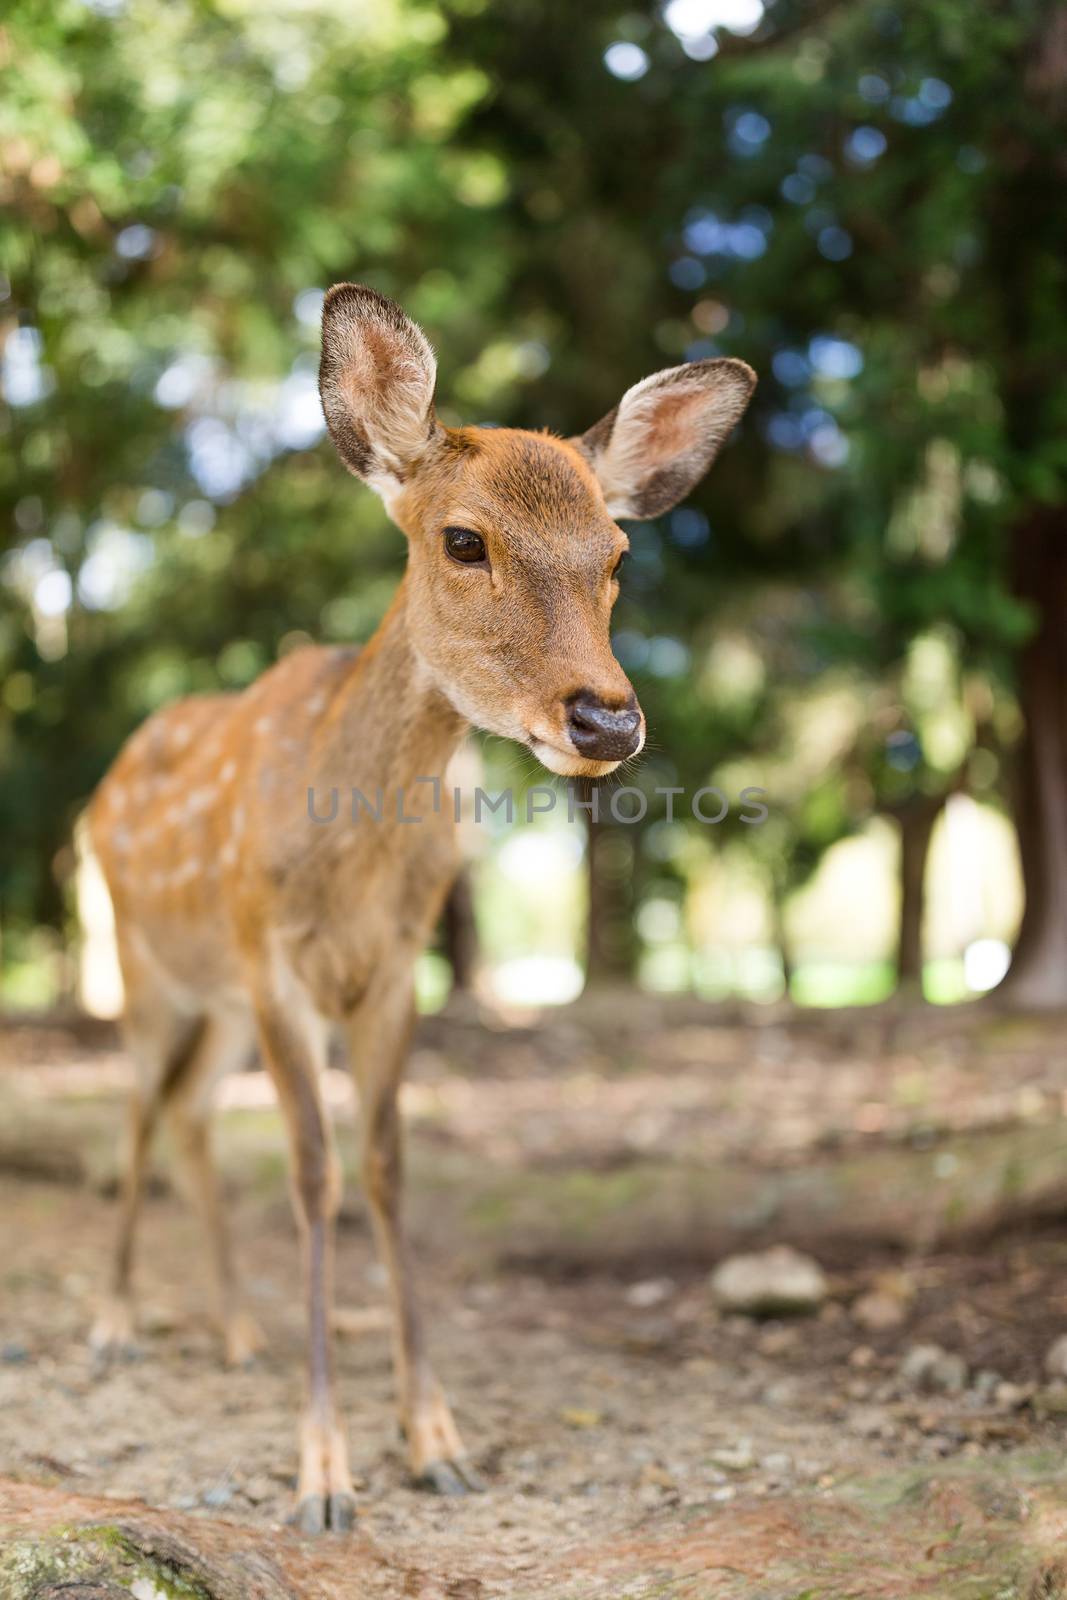 Cute little deer